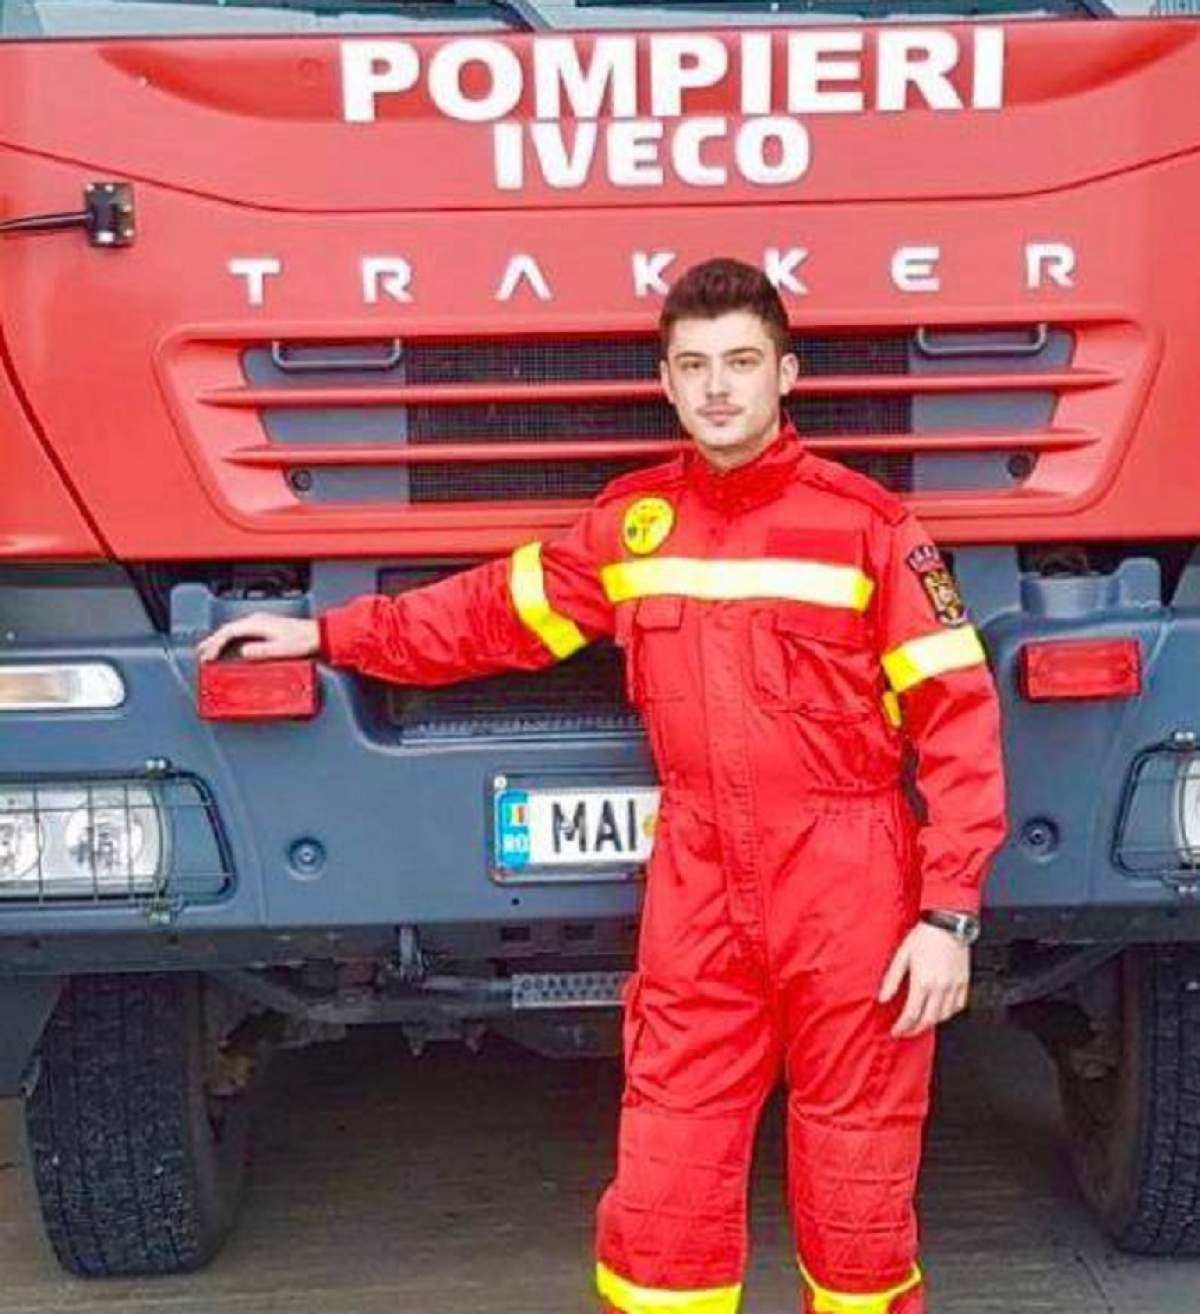 A decis să se facă pompier după ce tatăl lui a murit salvând vieţi! Povestea emoţionantă a lui Andrei